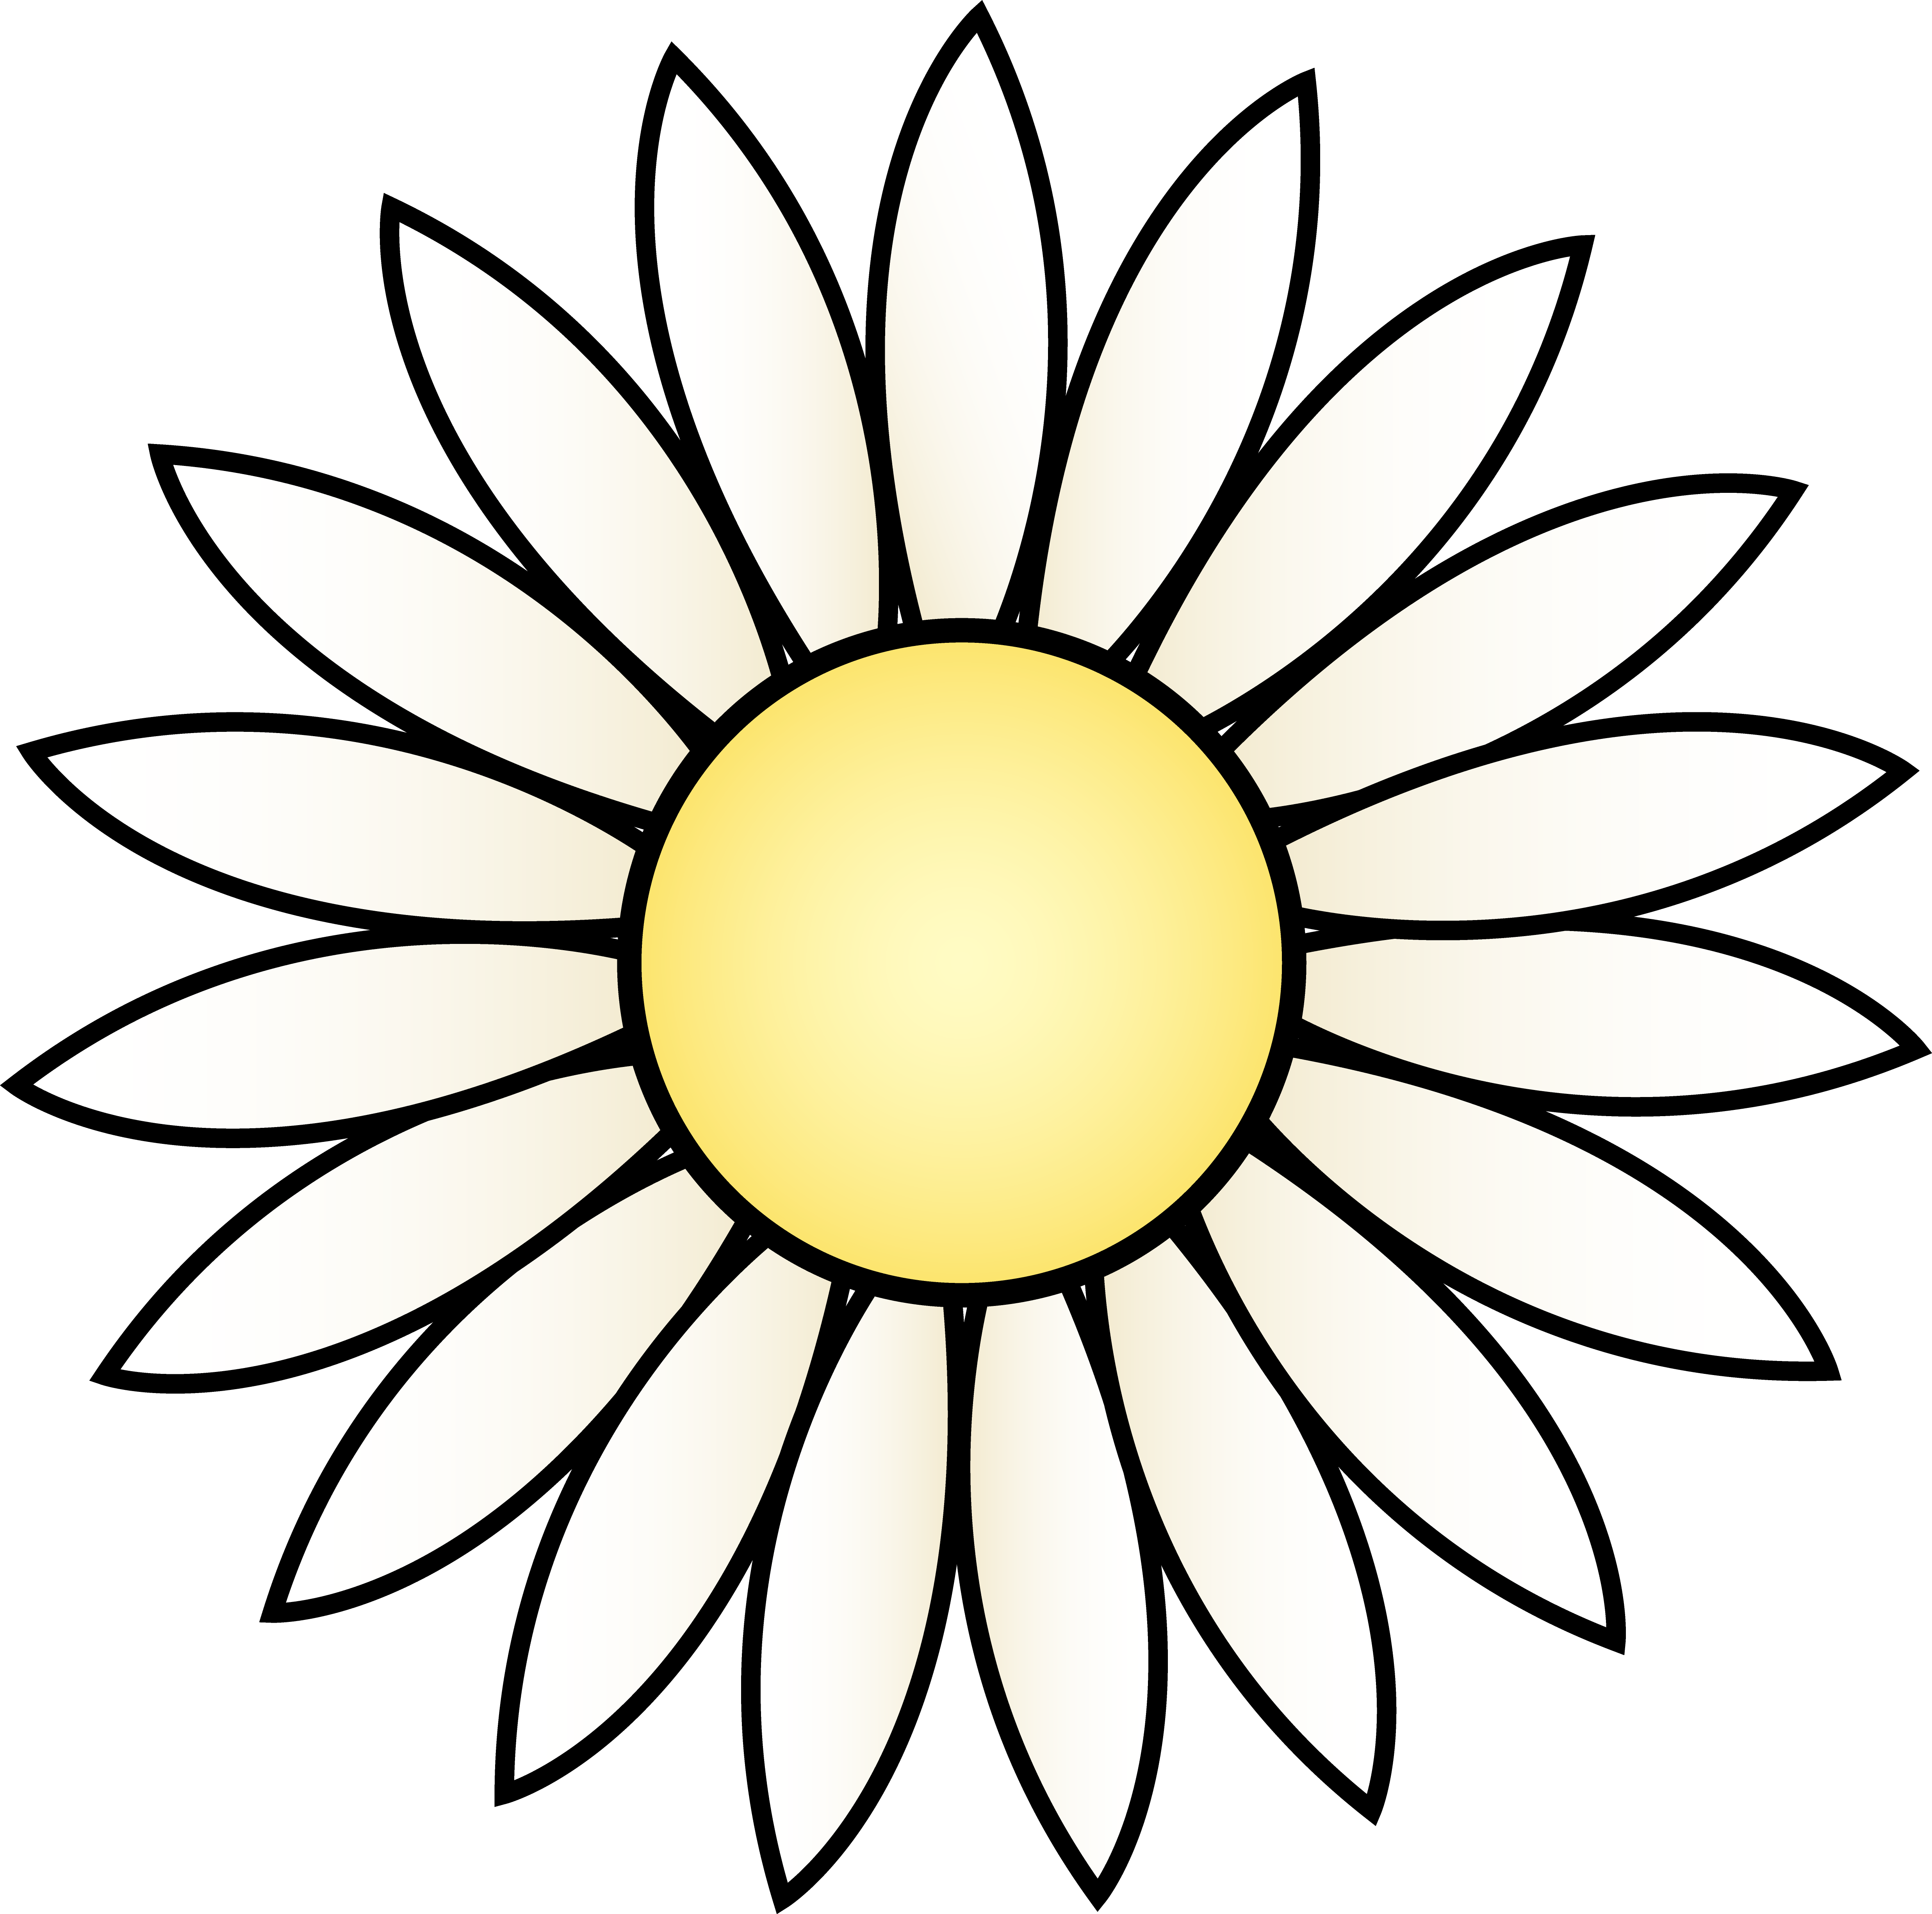 Single White Flower